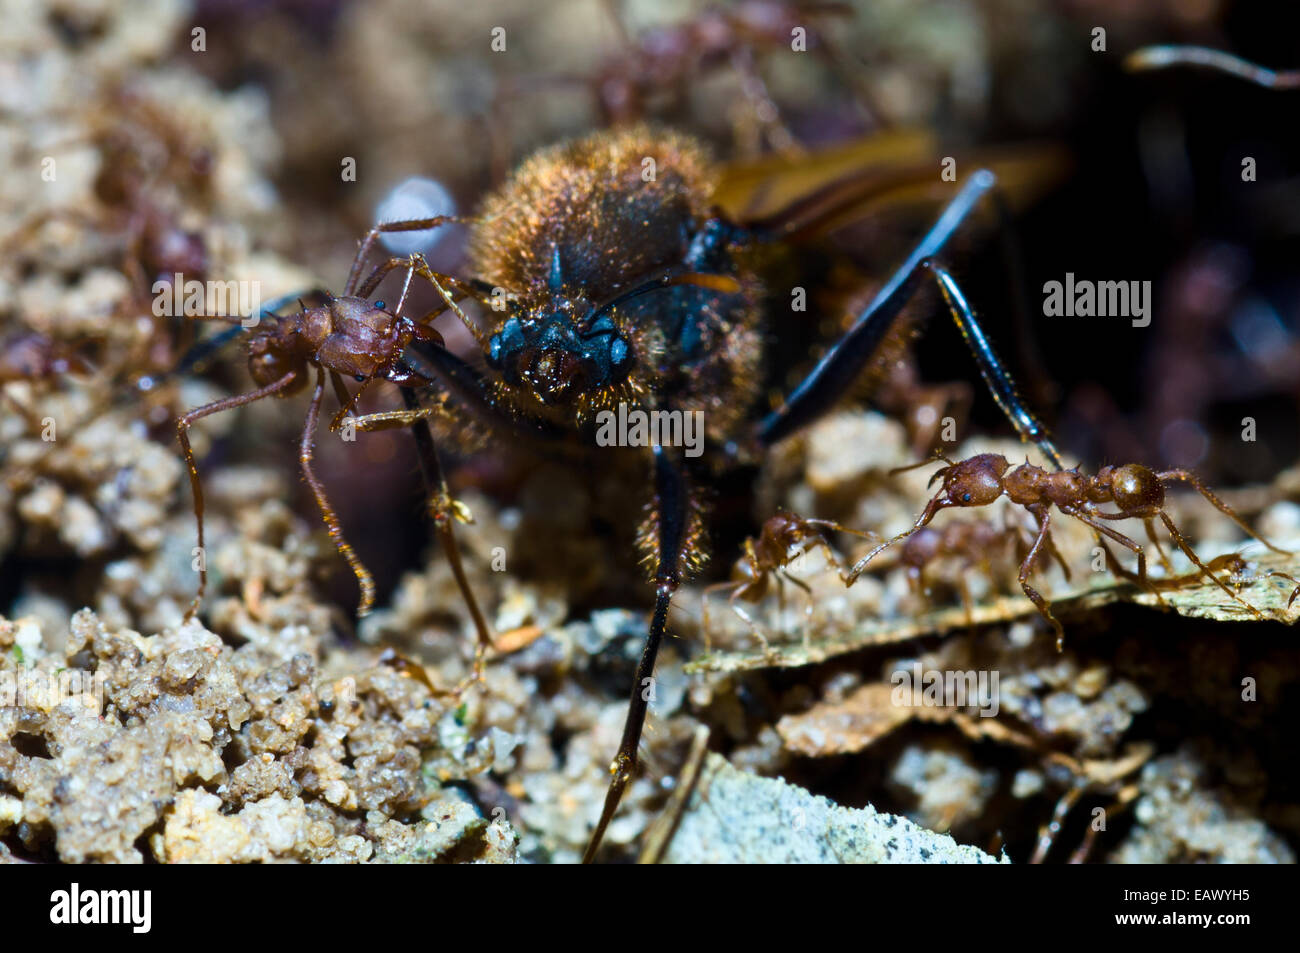 La hormiga cortadora de hojas soldados atacando alate para sacarlo del nido para un vuelo nupcial. Foto de stock